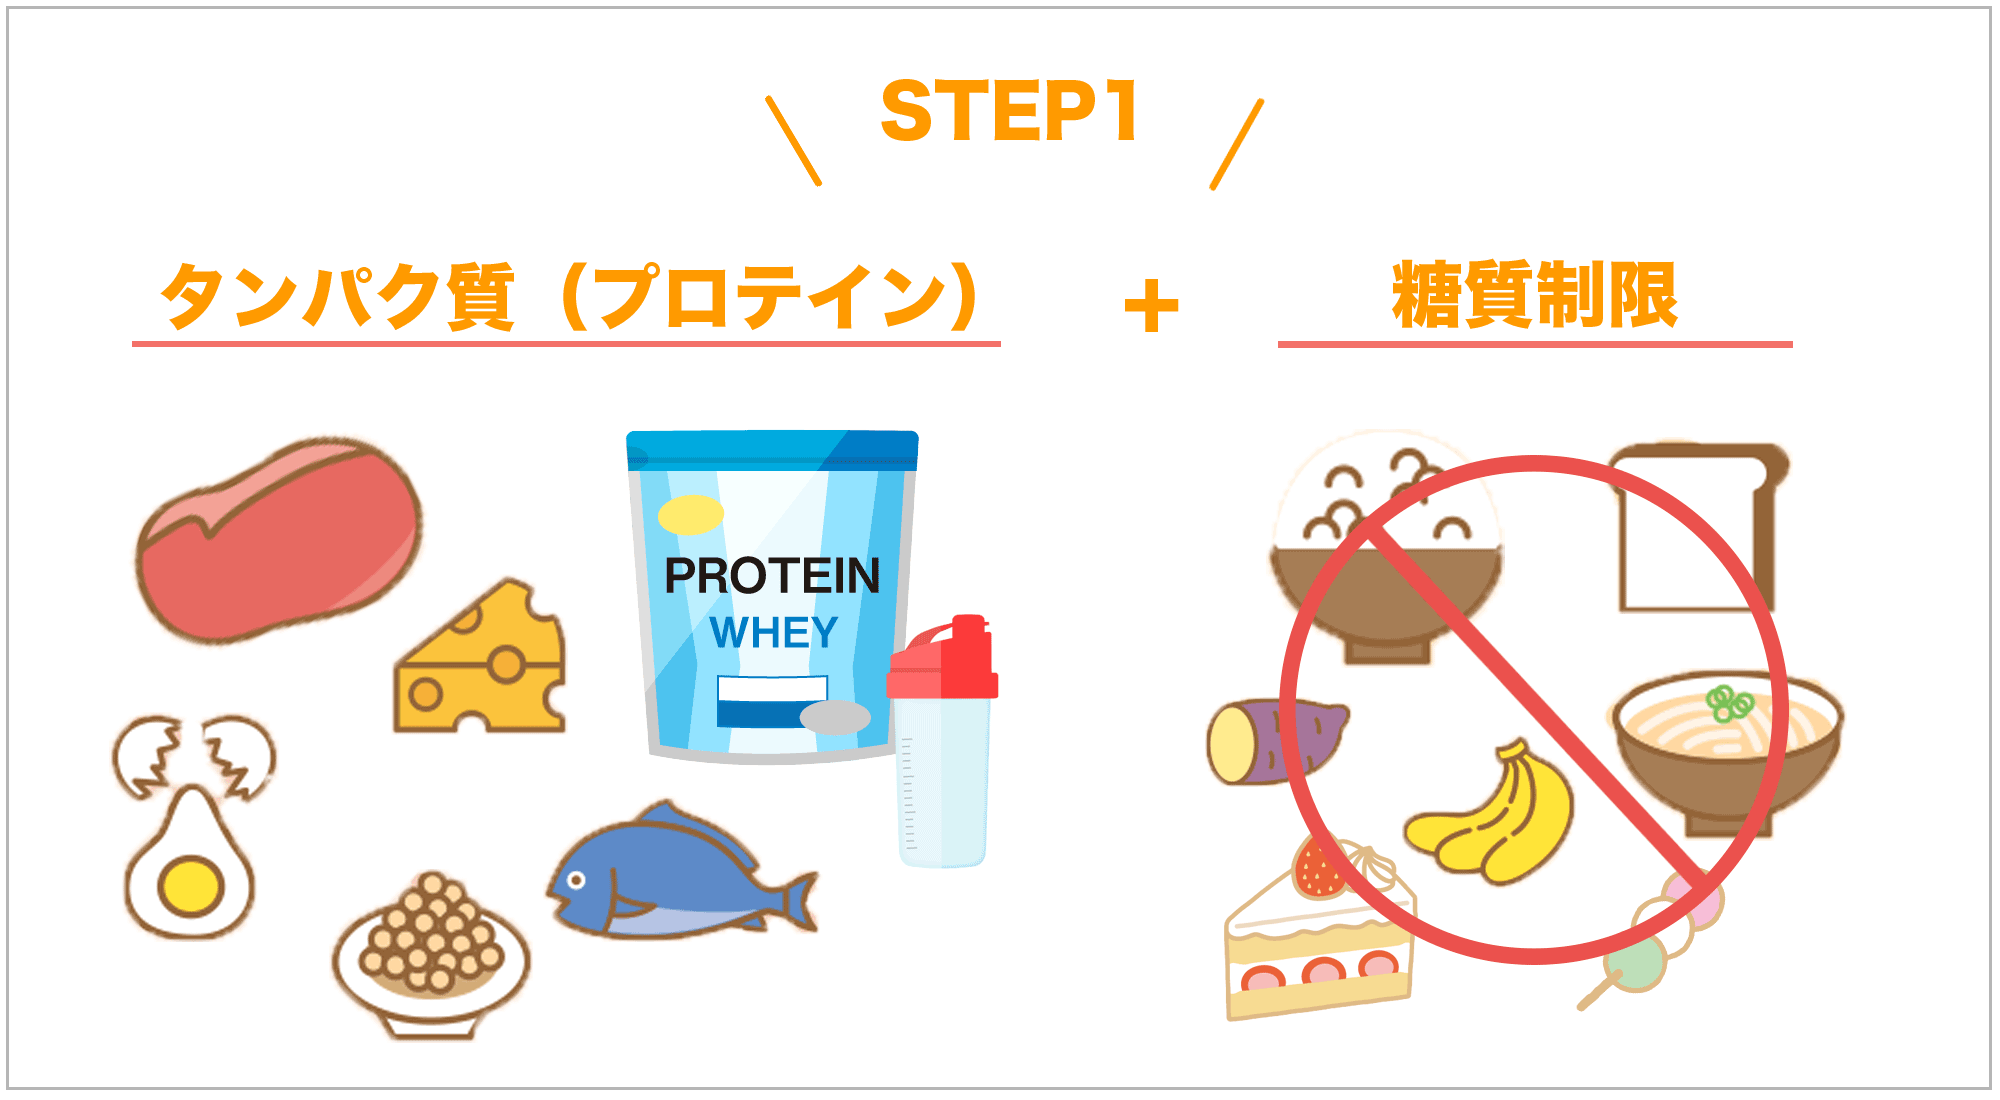 藤川理論やり方STEP１
タンパク質プラス糖質制限